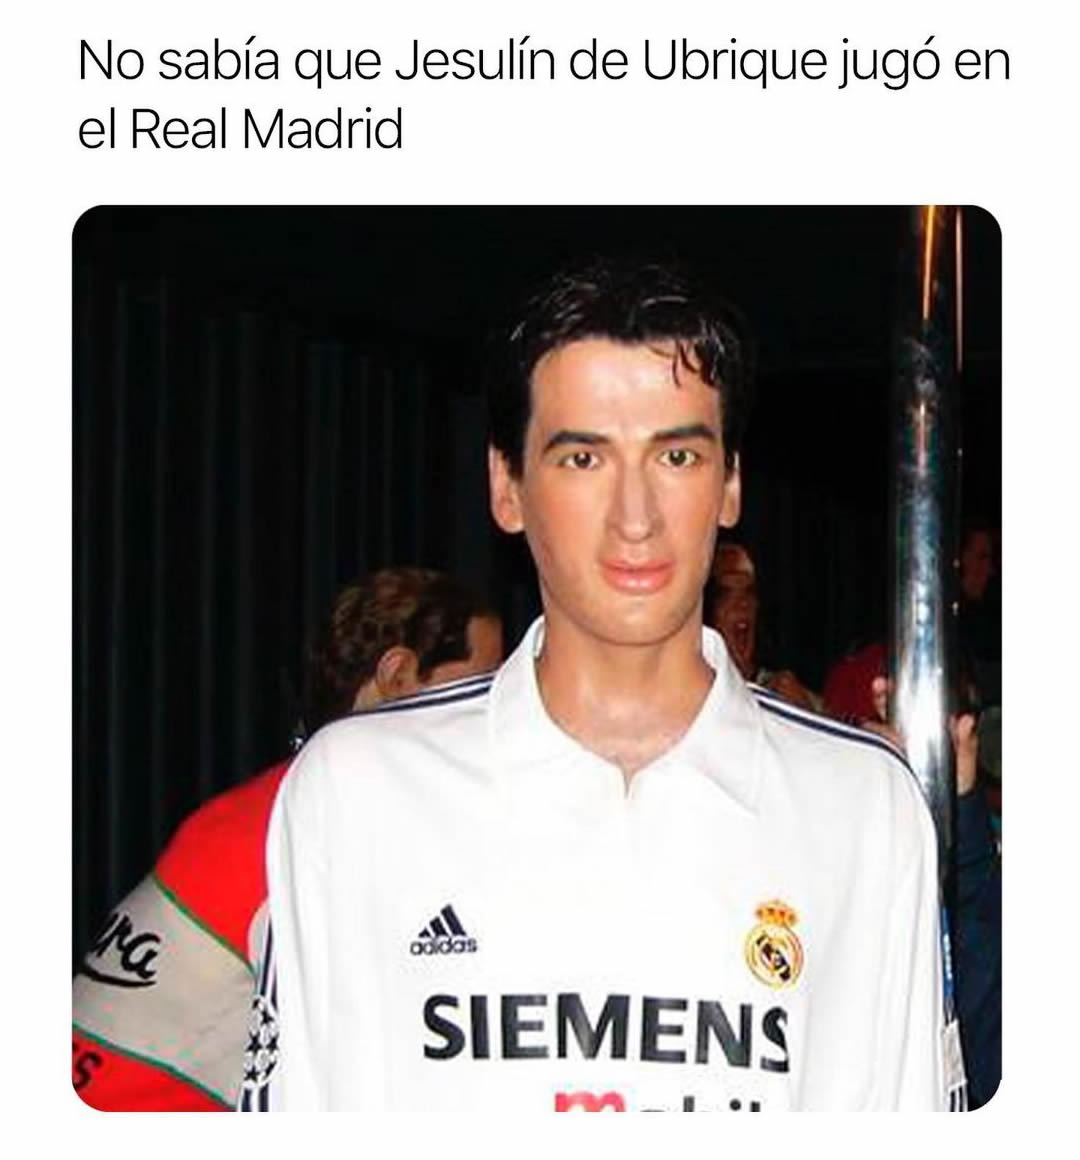 No sabía que Jesulín de Ubrique jugó en el Real Madrid.